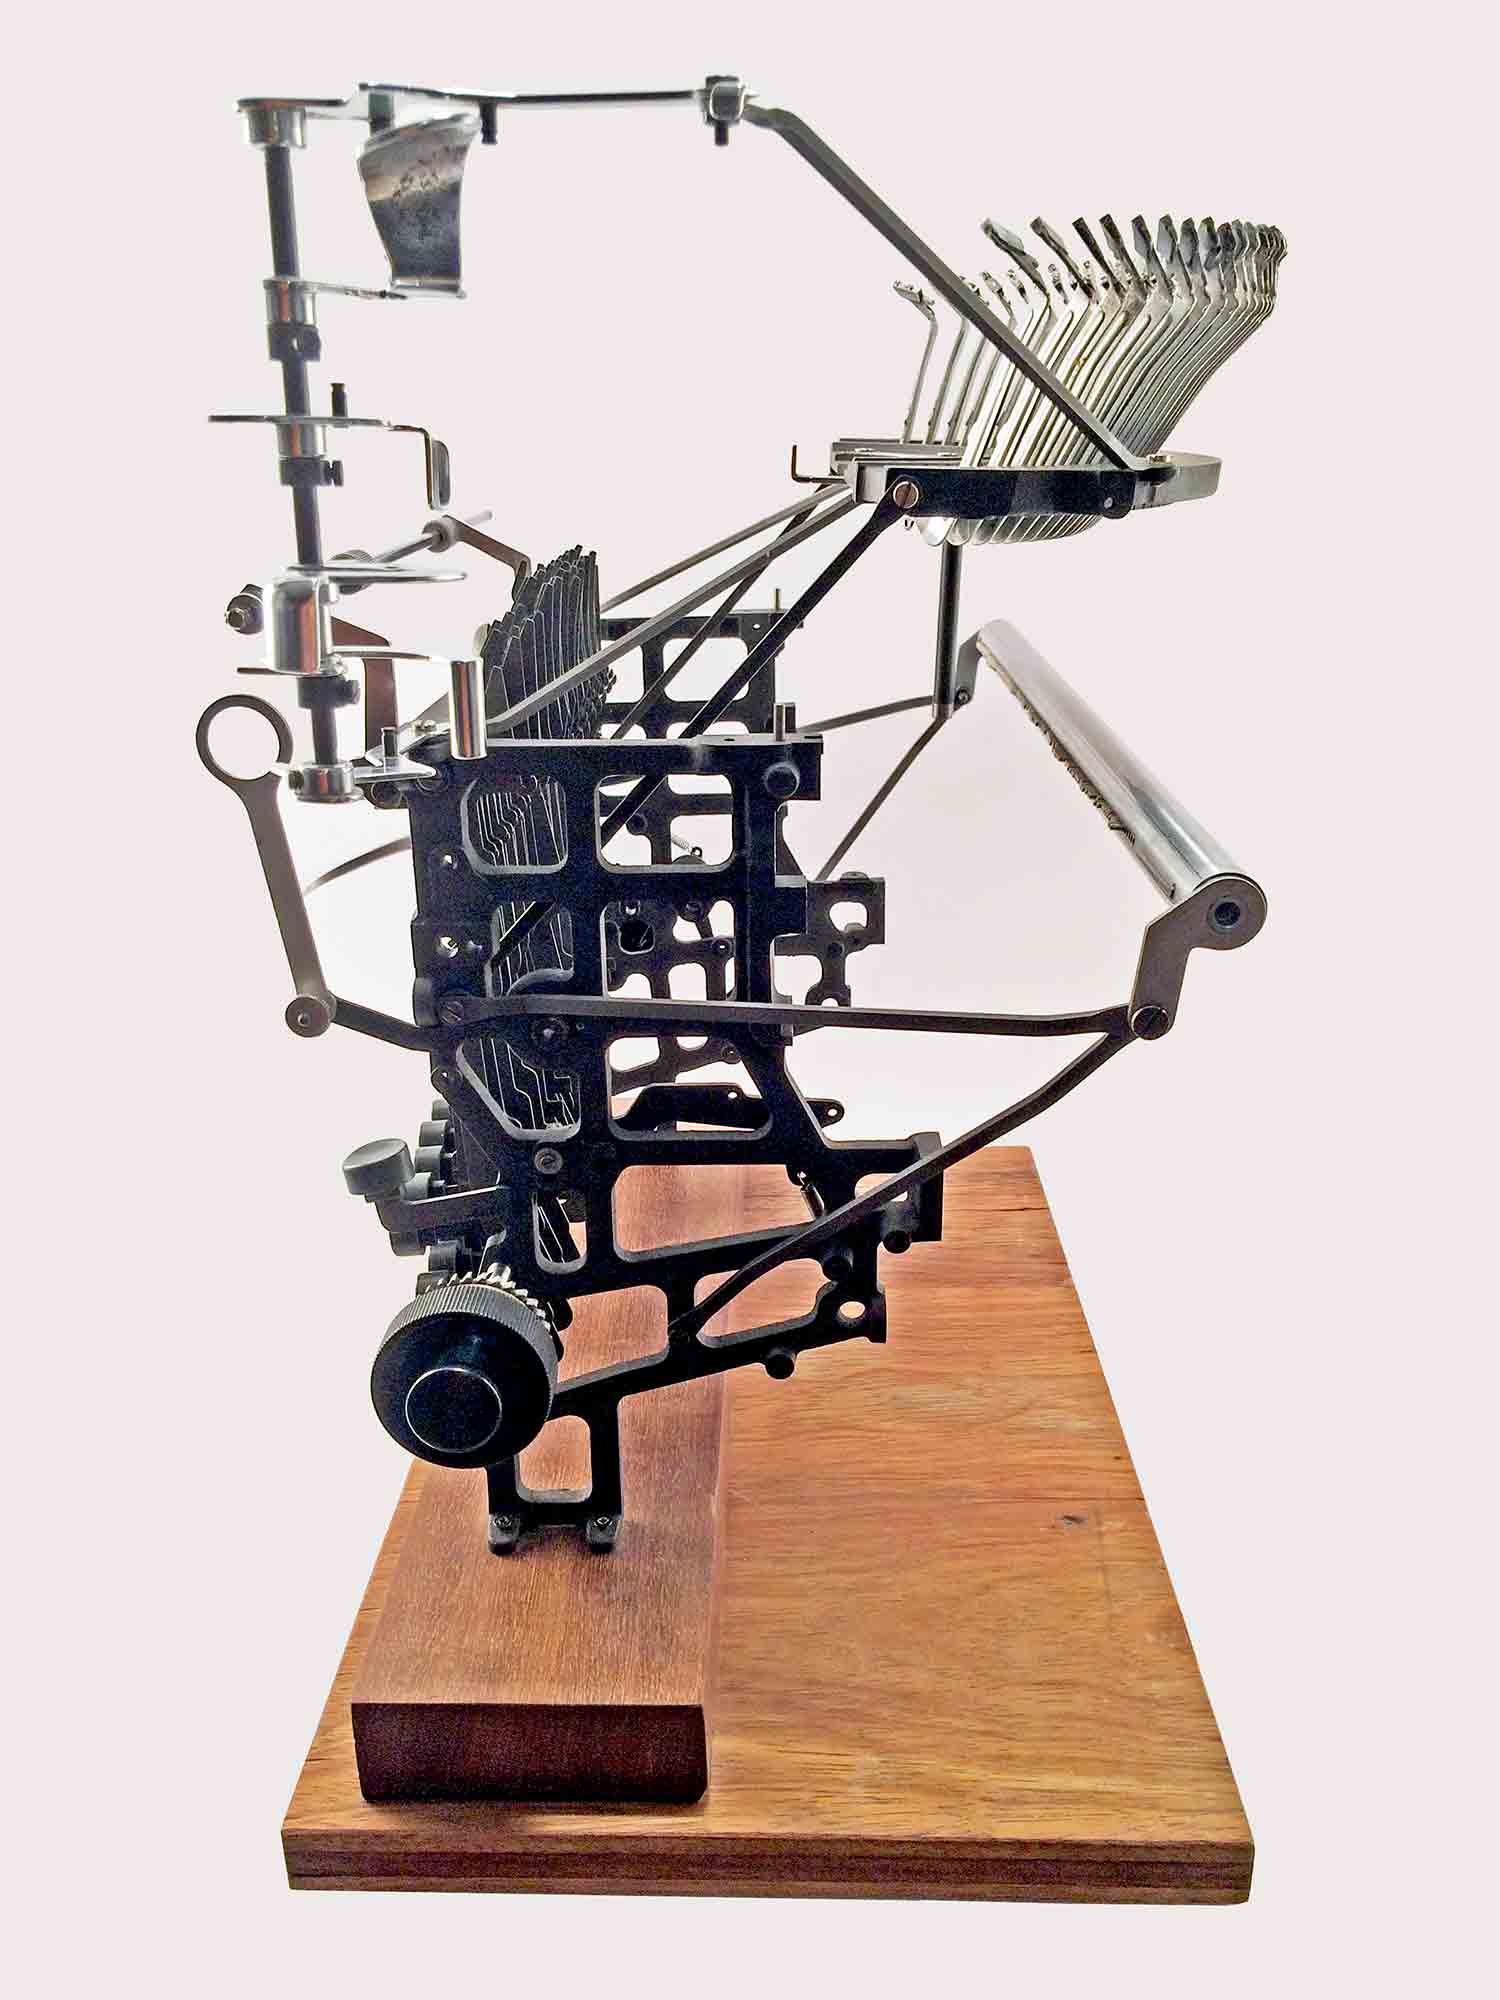 Escultura de una interpretación de una máquina de escribir Olivetti Lexicon 80